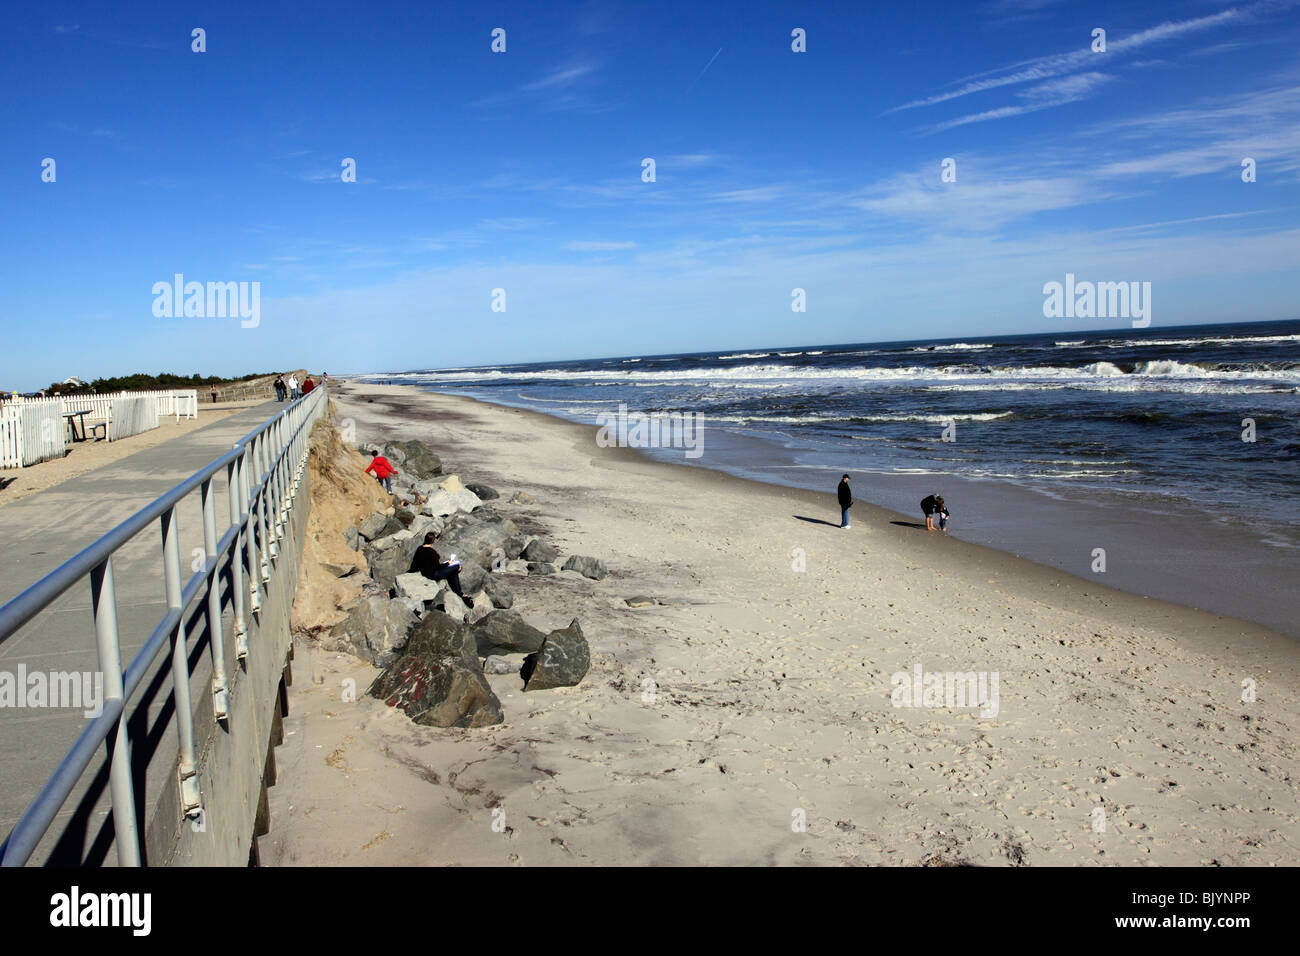 Smith Point Beach on the Atlantic Ocean, Long Island, NY Stock Photo